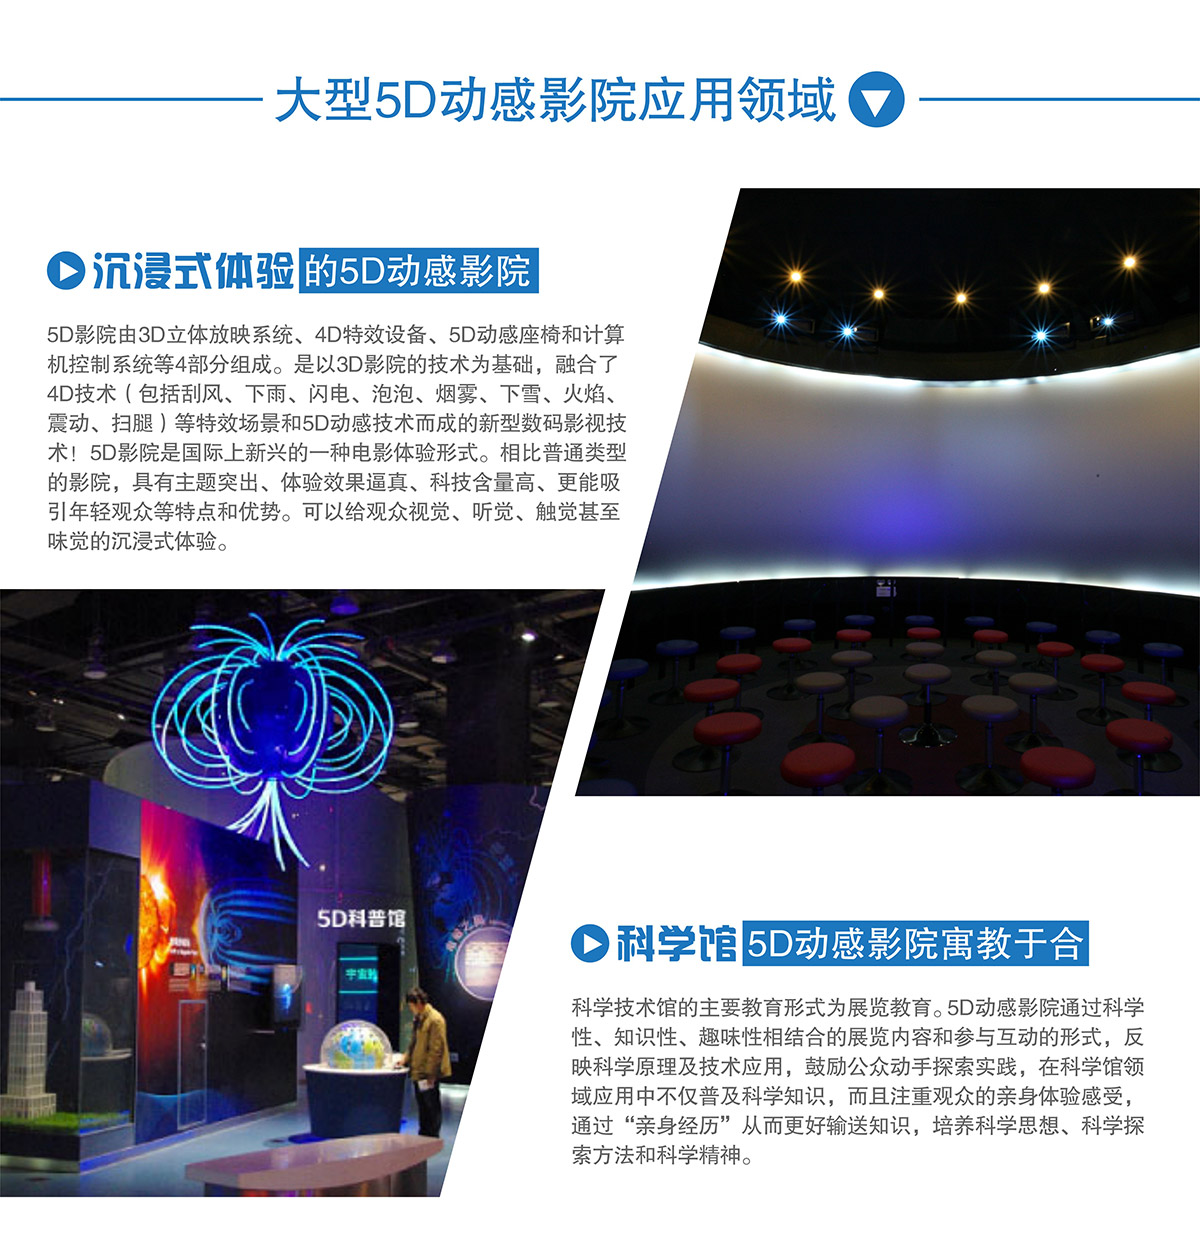 展览展示大型5D动感影院应用领域.jpg